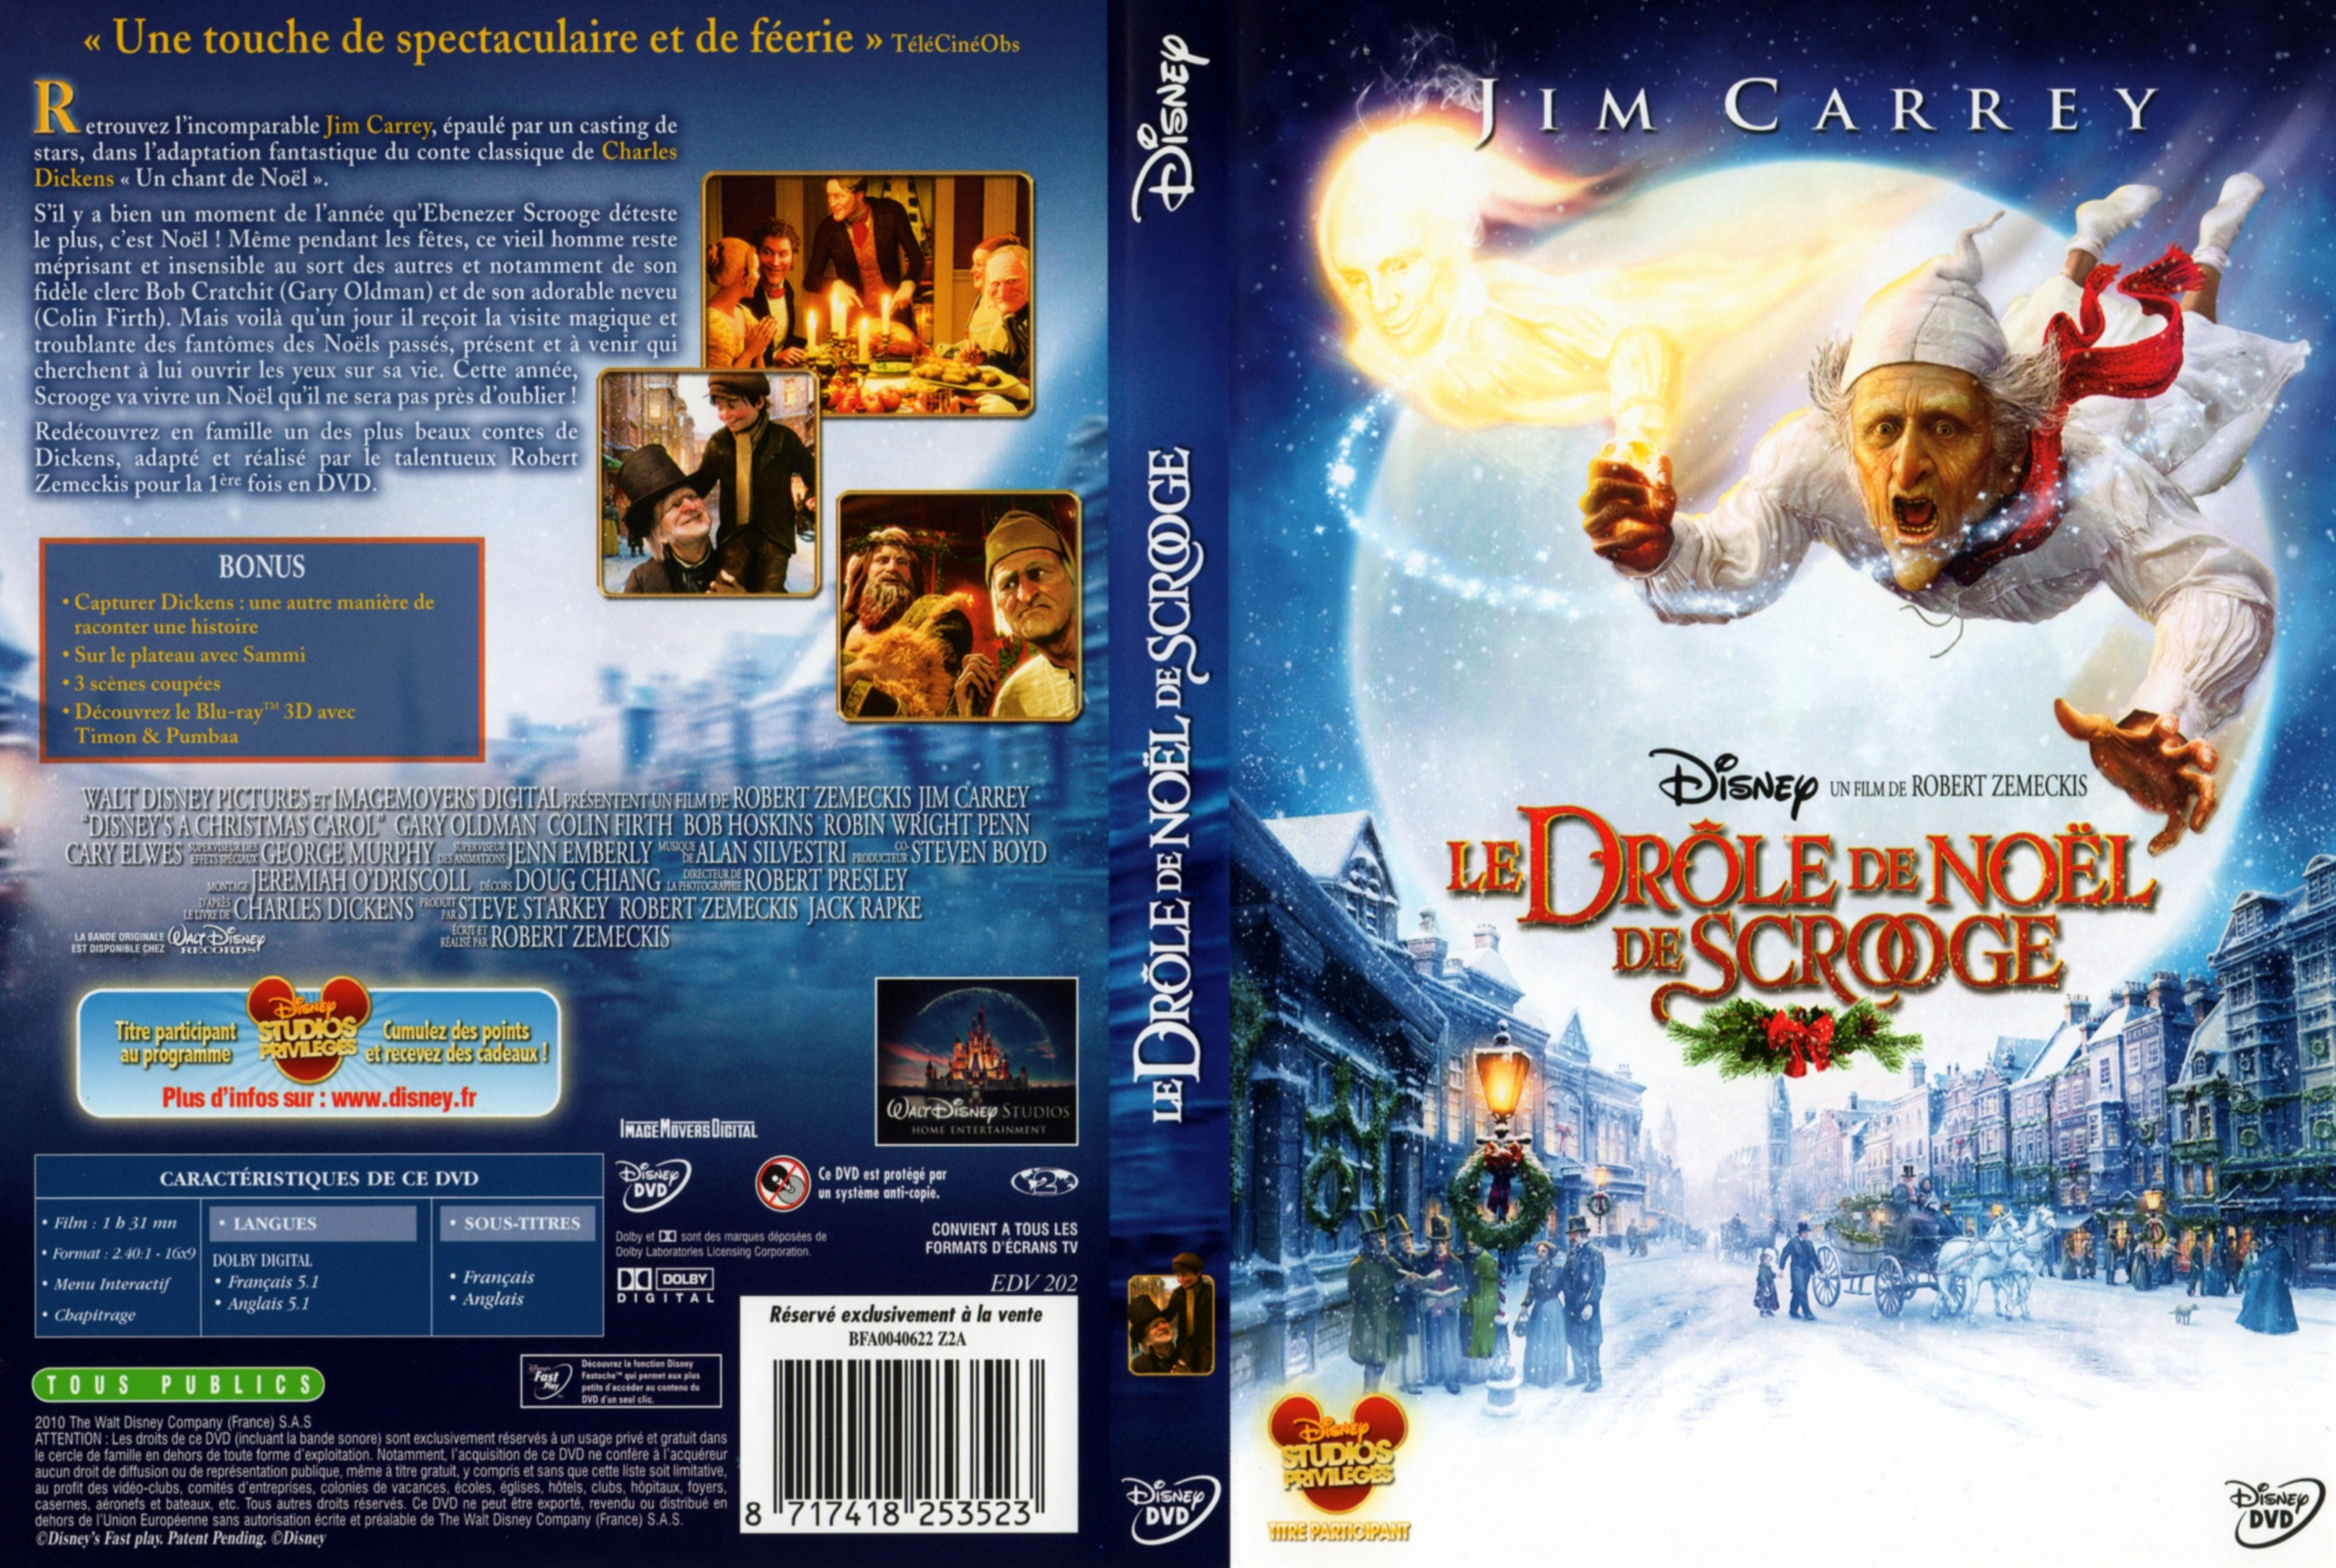 Jaquette DVD Le drole de Noel de Scrooge